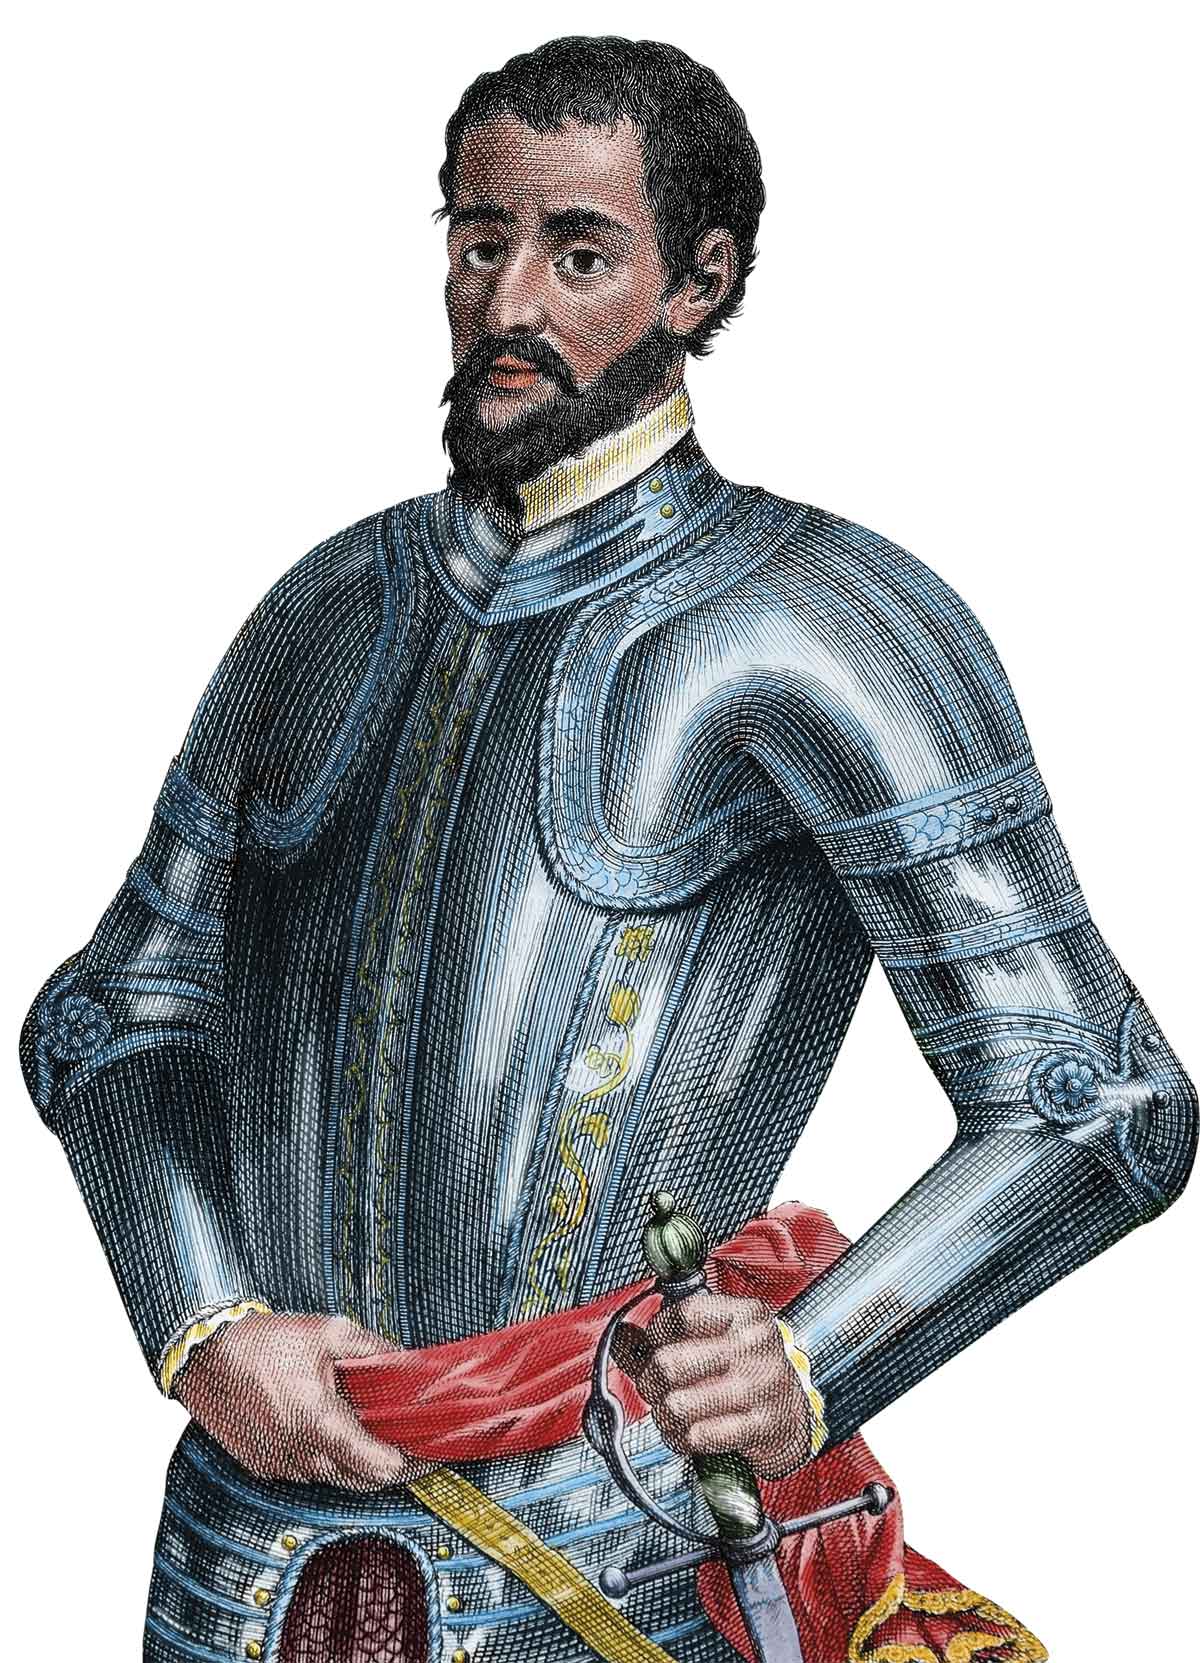 Grabado coloreado de Hernando de Soto